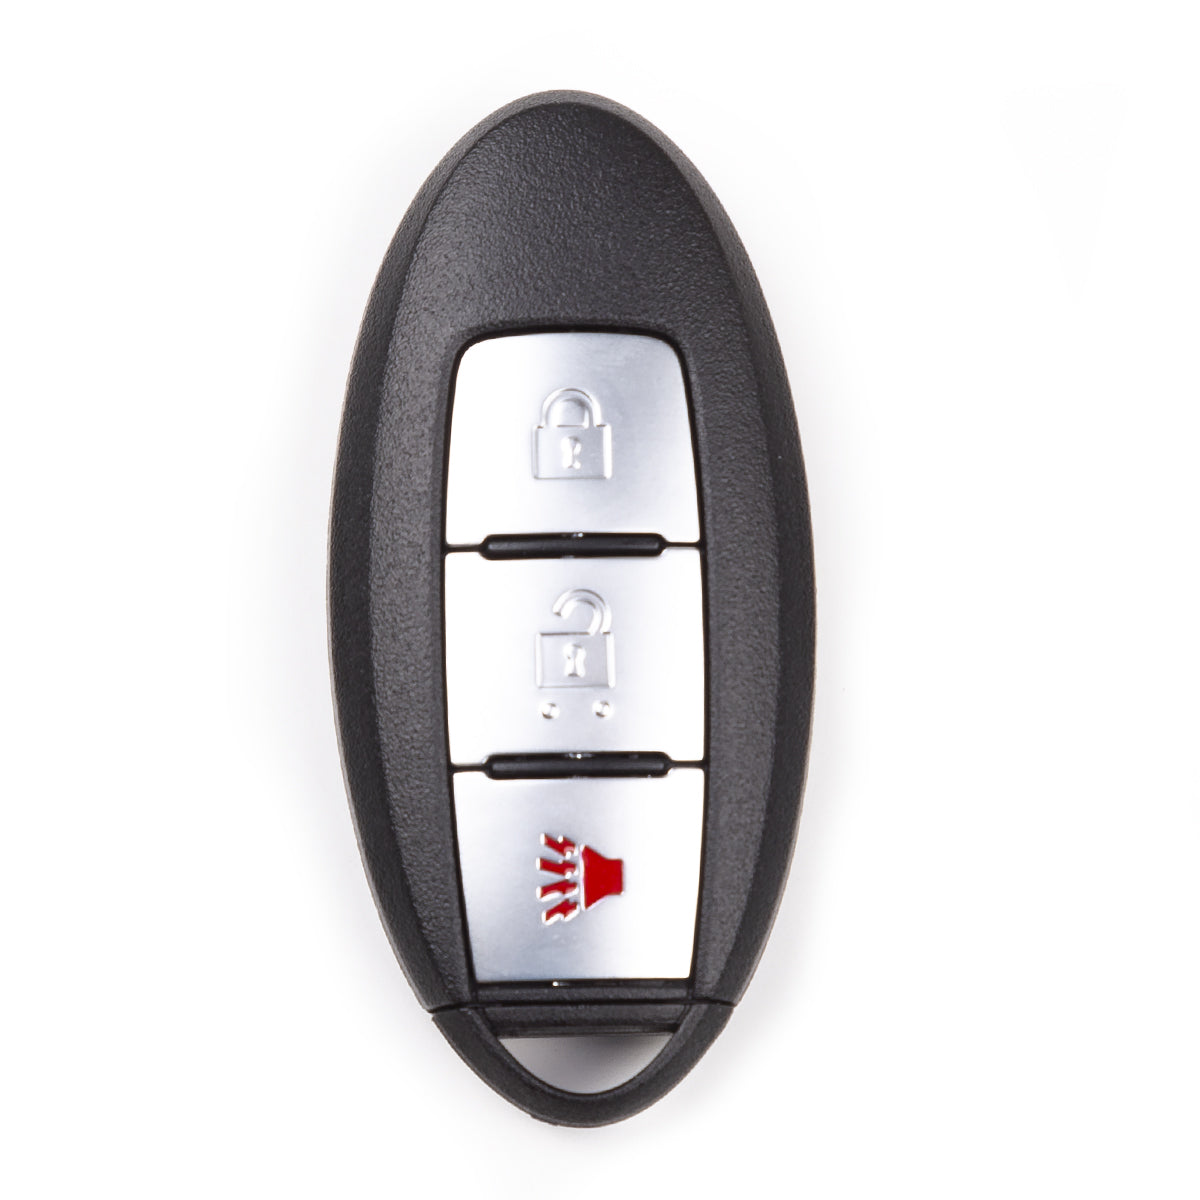 2011 Nissan Juke Smart Key 3 Buttons Fob FCC# CWTWB1U808 - Aftermarket